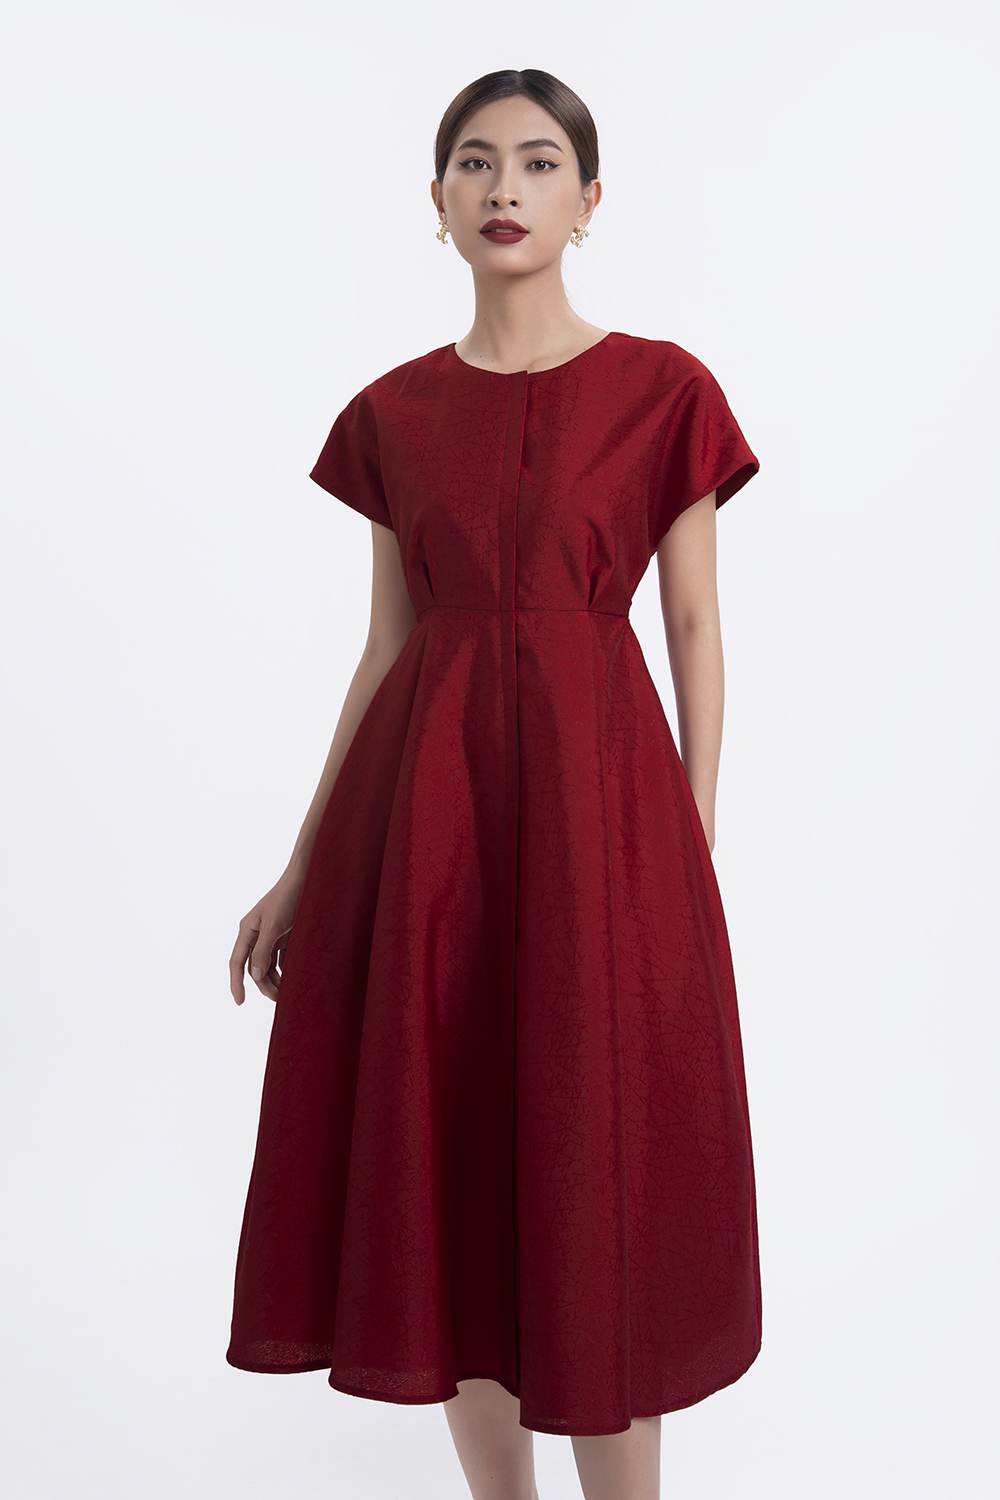 Đầm nhung đỏ mận dáng xòe cổ V thời trang SIXDO Giá tốt, Mẫu đẹp